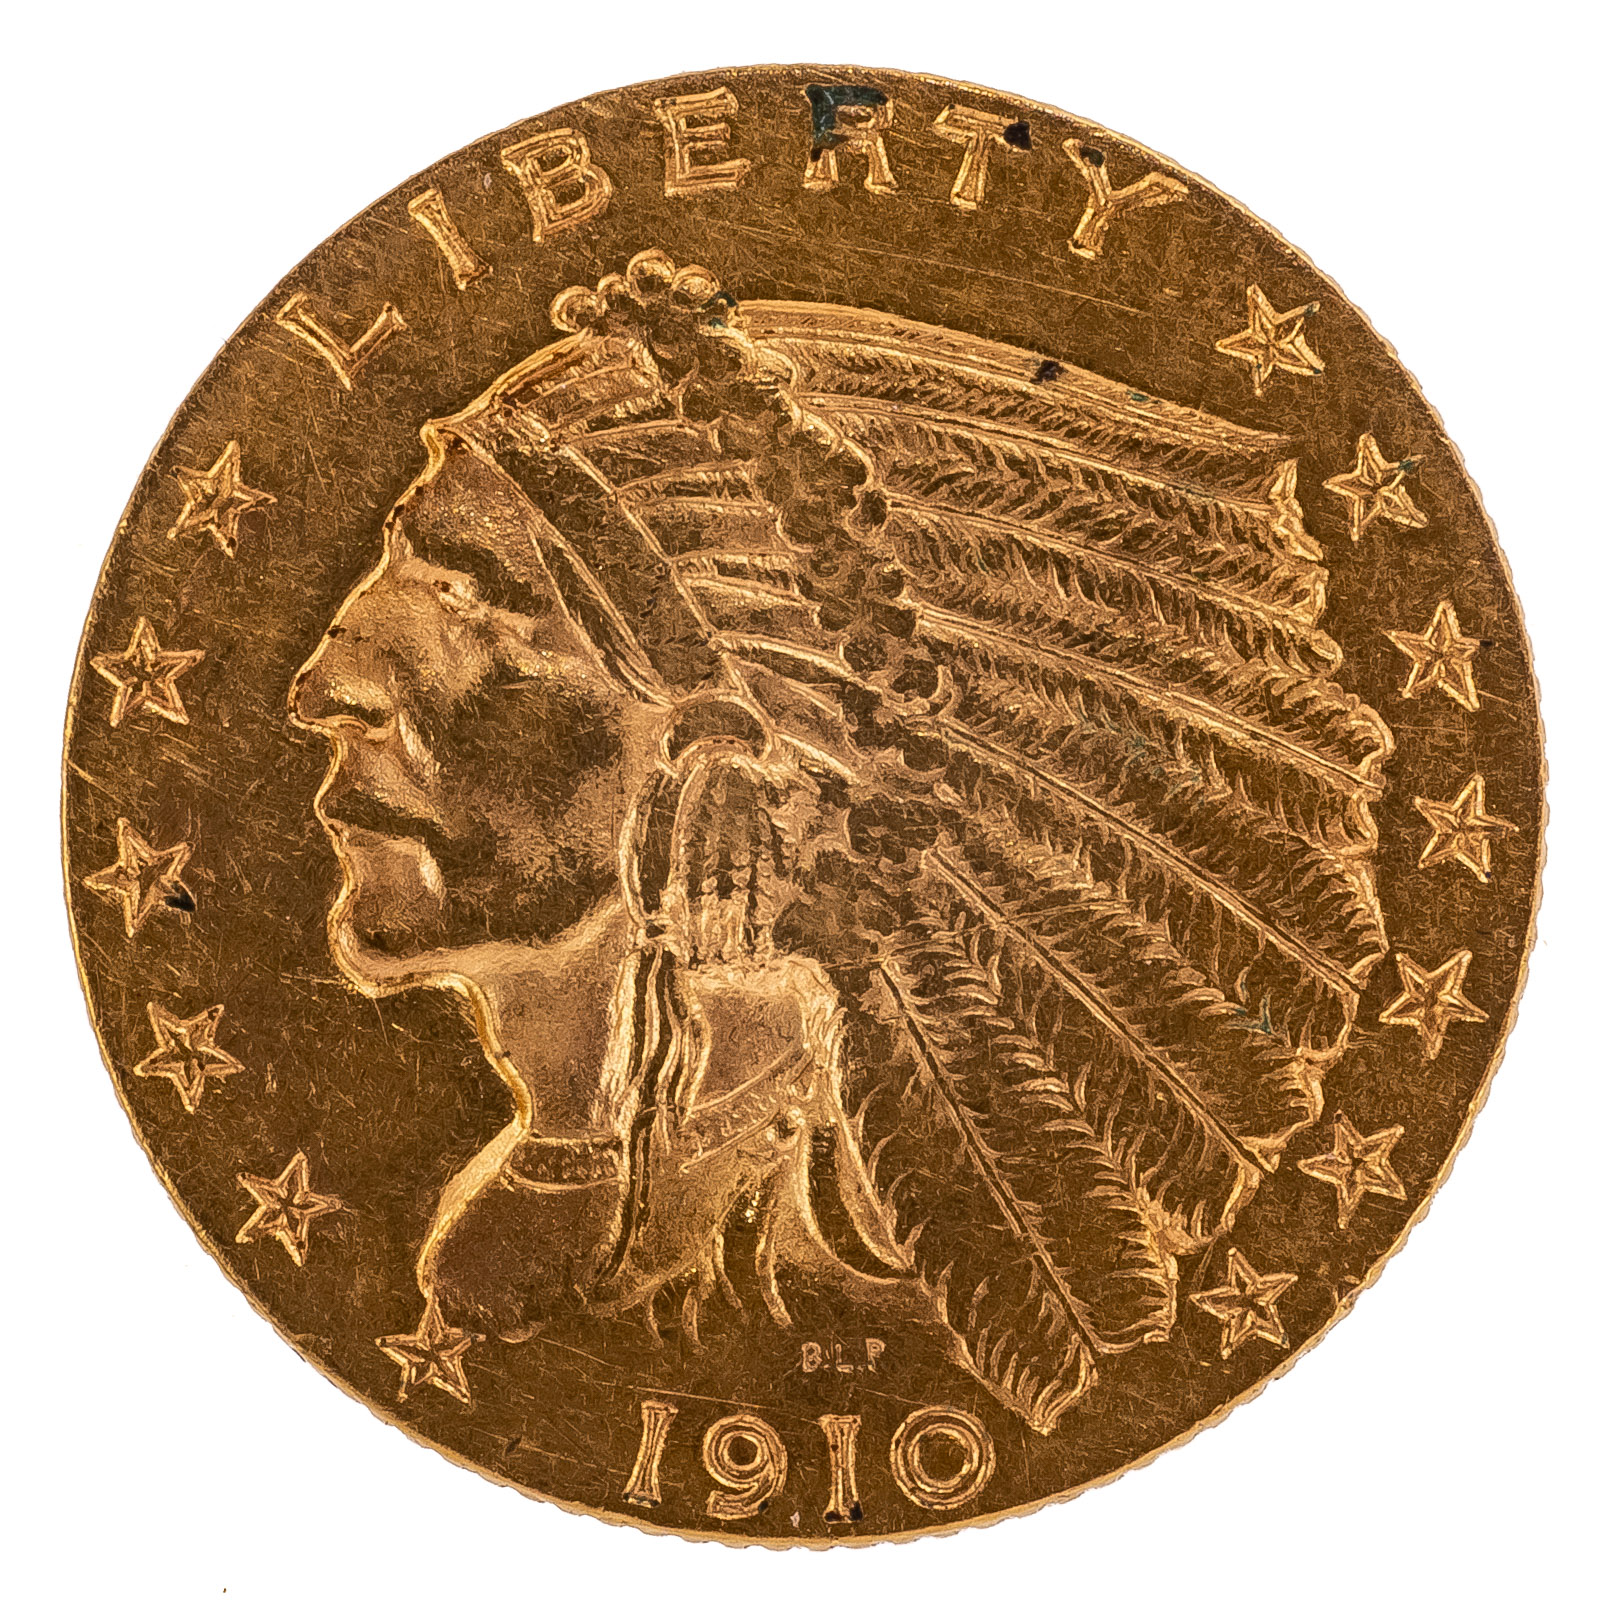 1910 INDIAN $2.5 QUARTER EAGLE